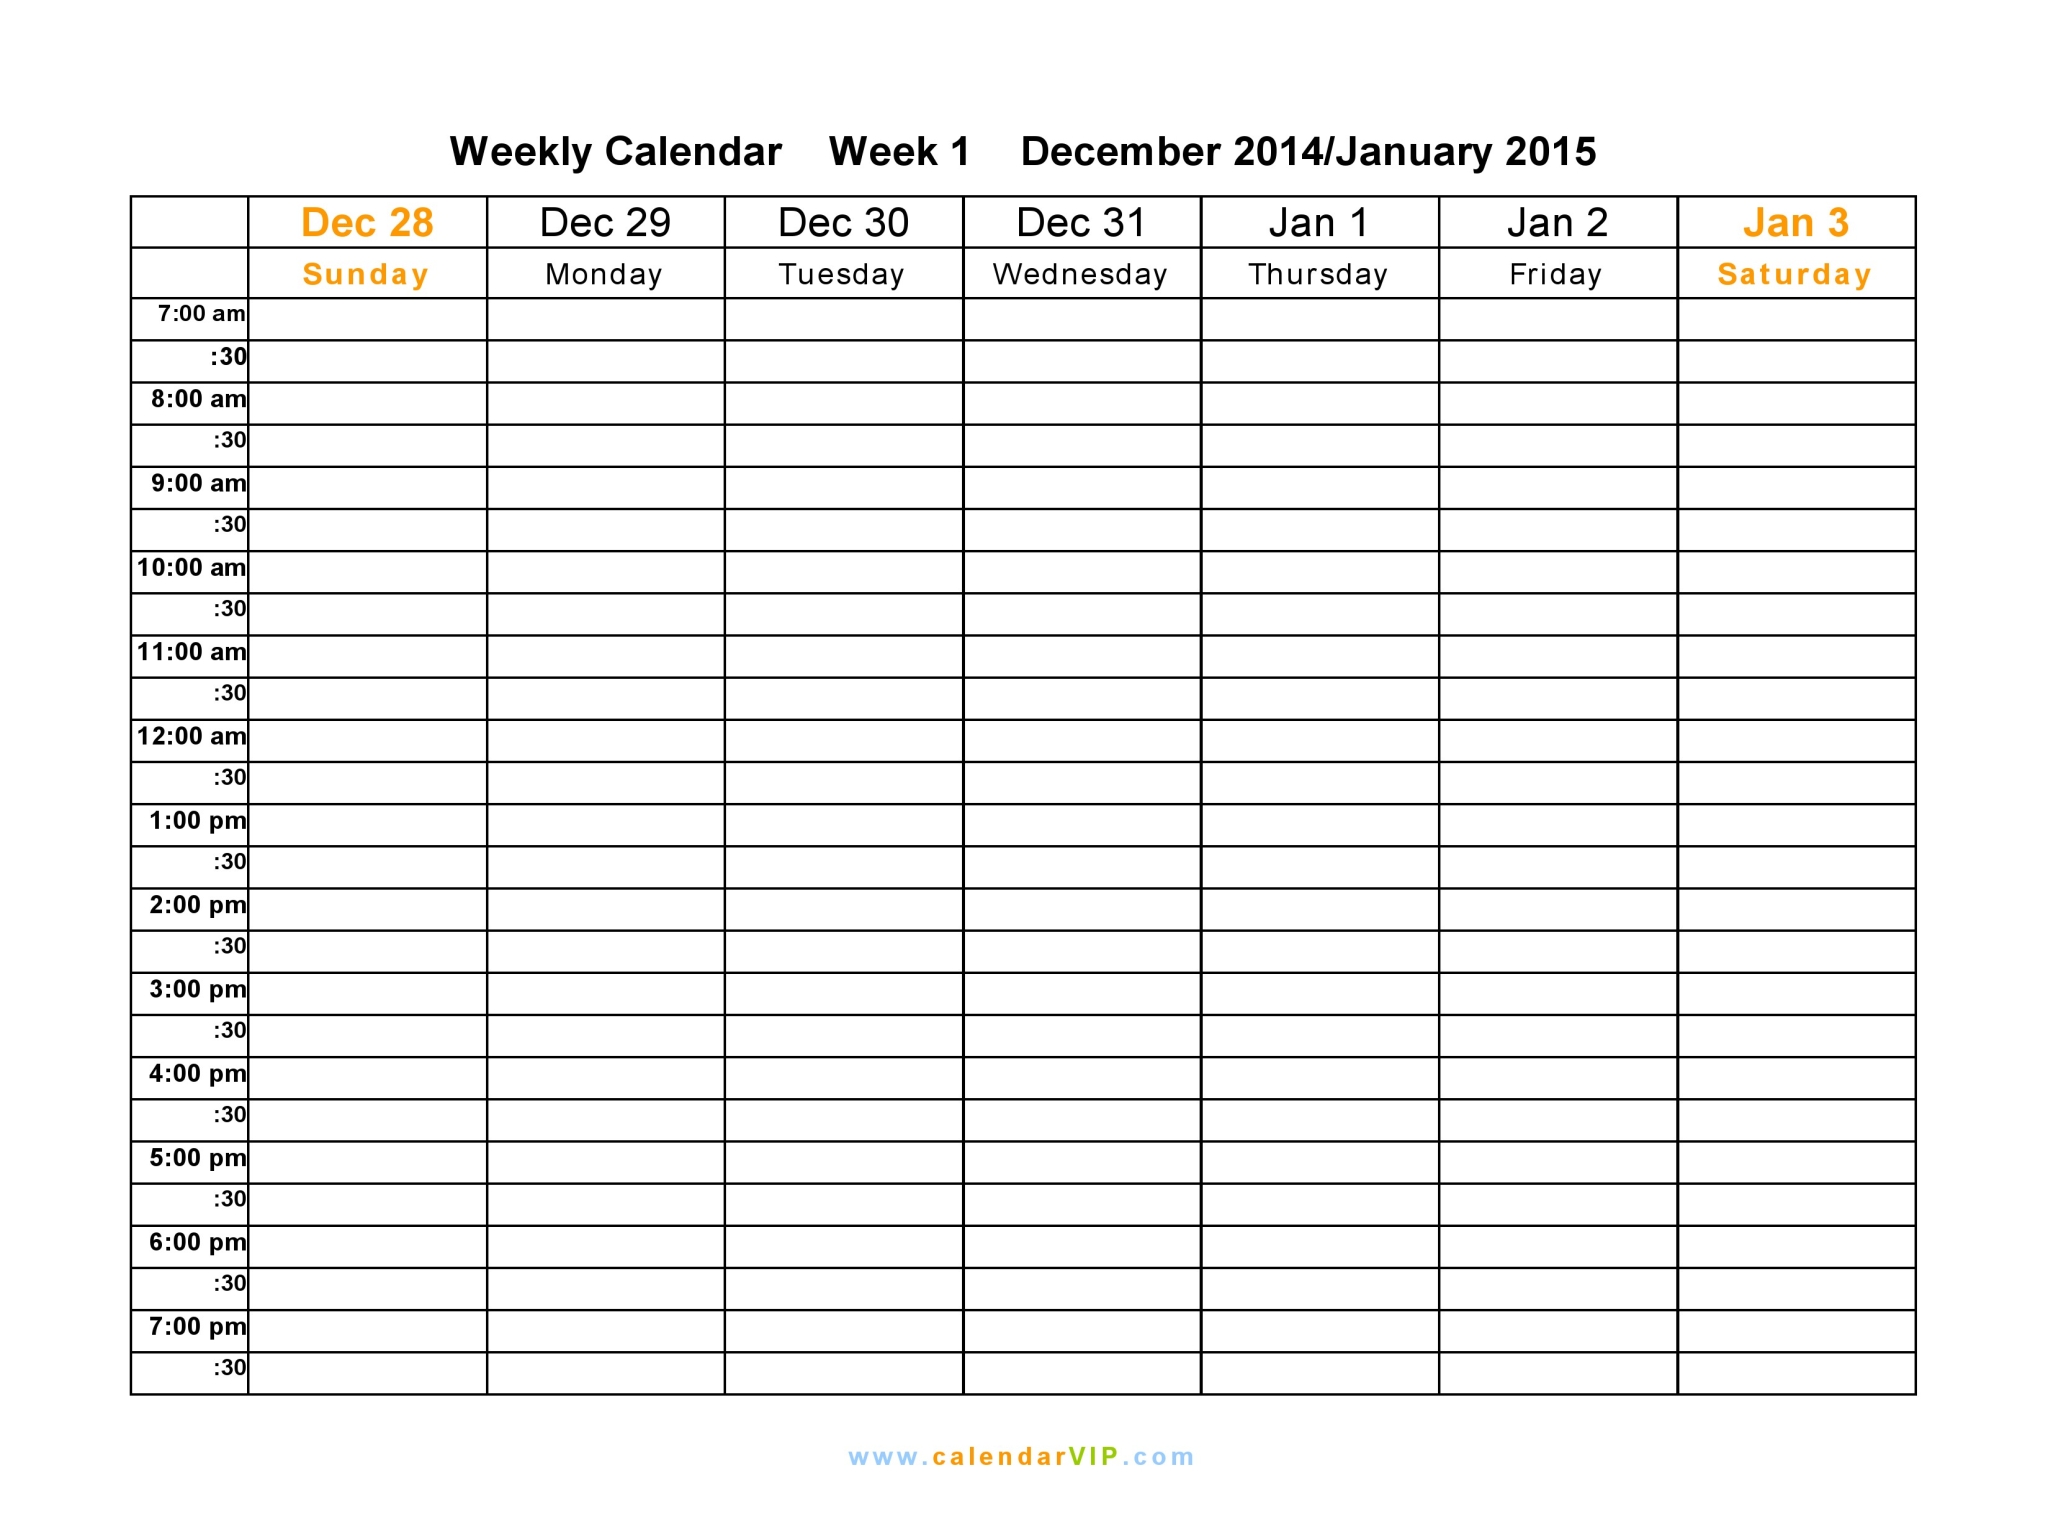 Weekly Calendar Schedule 2015